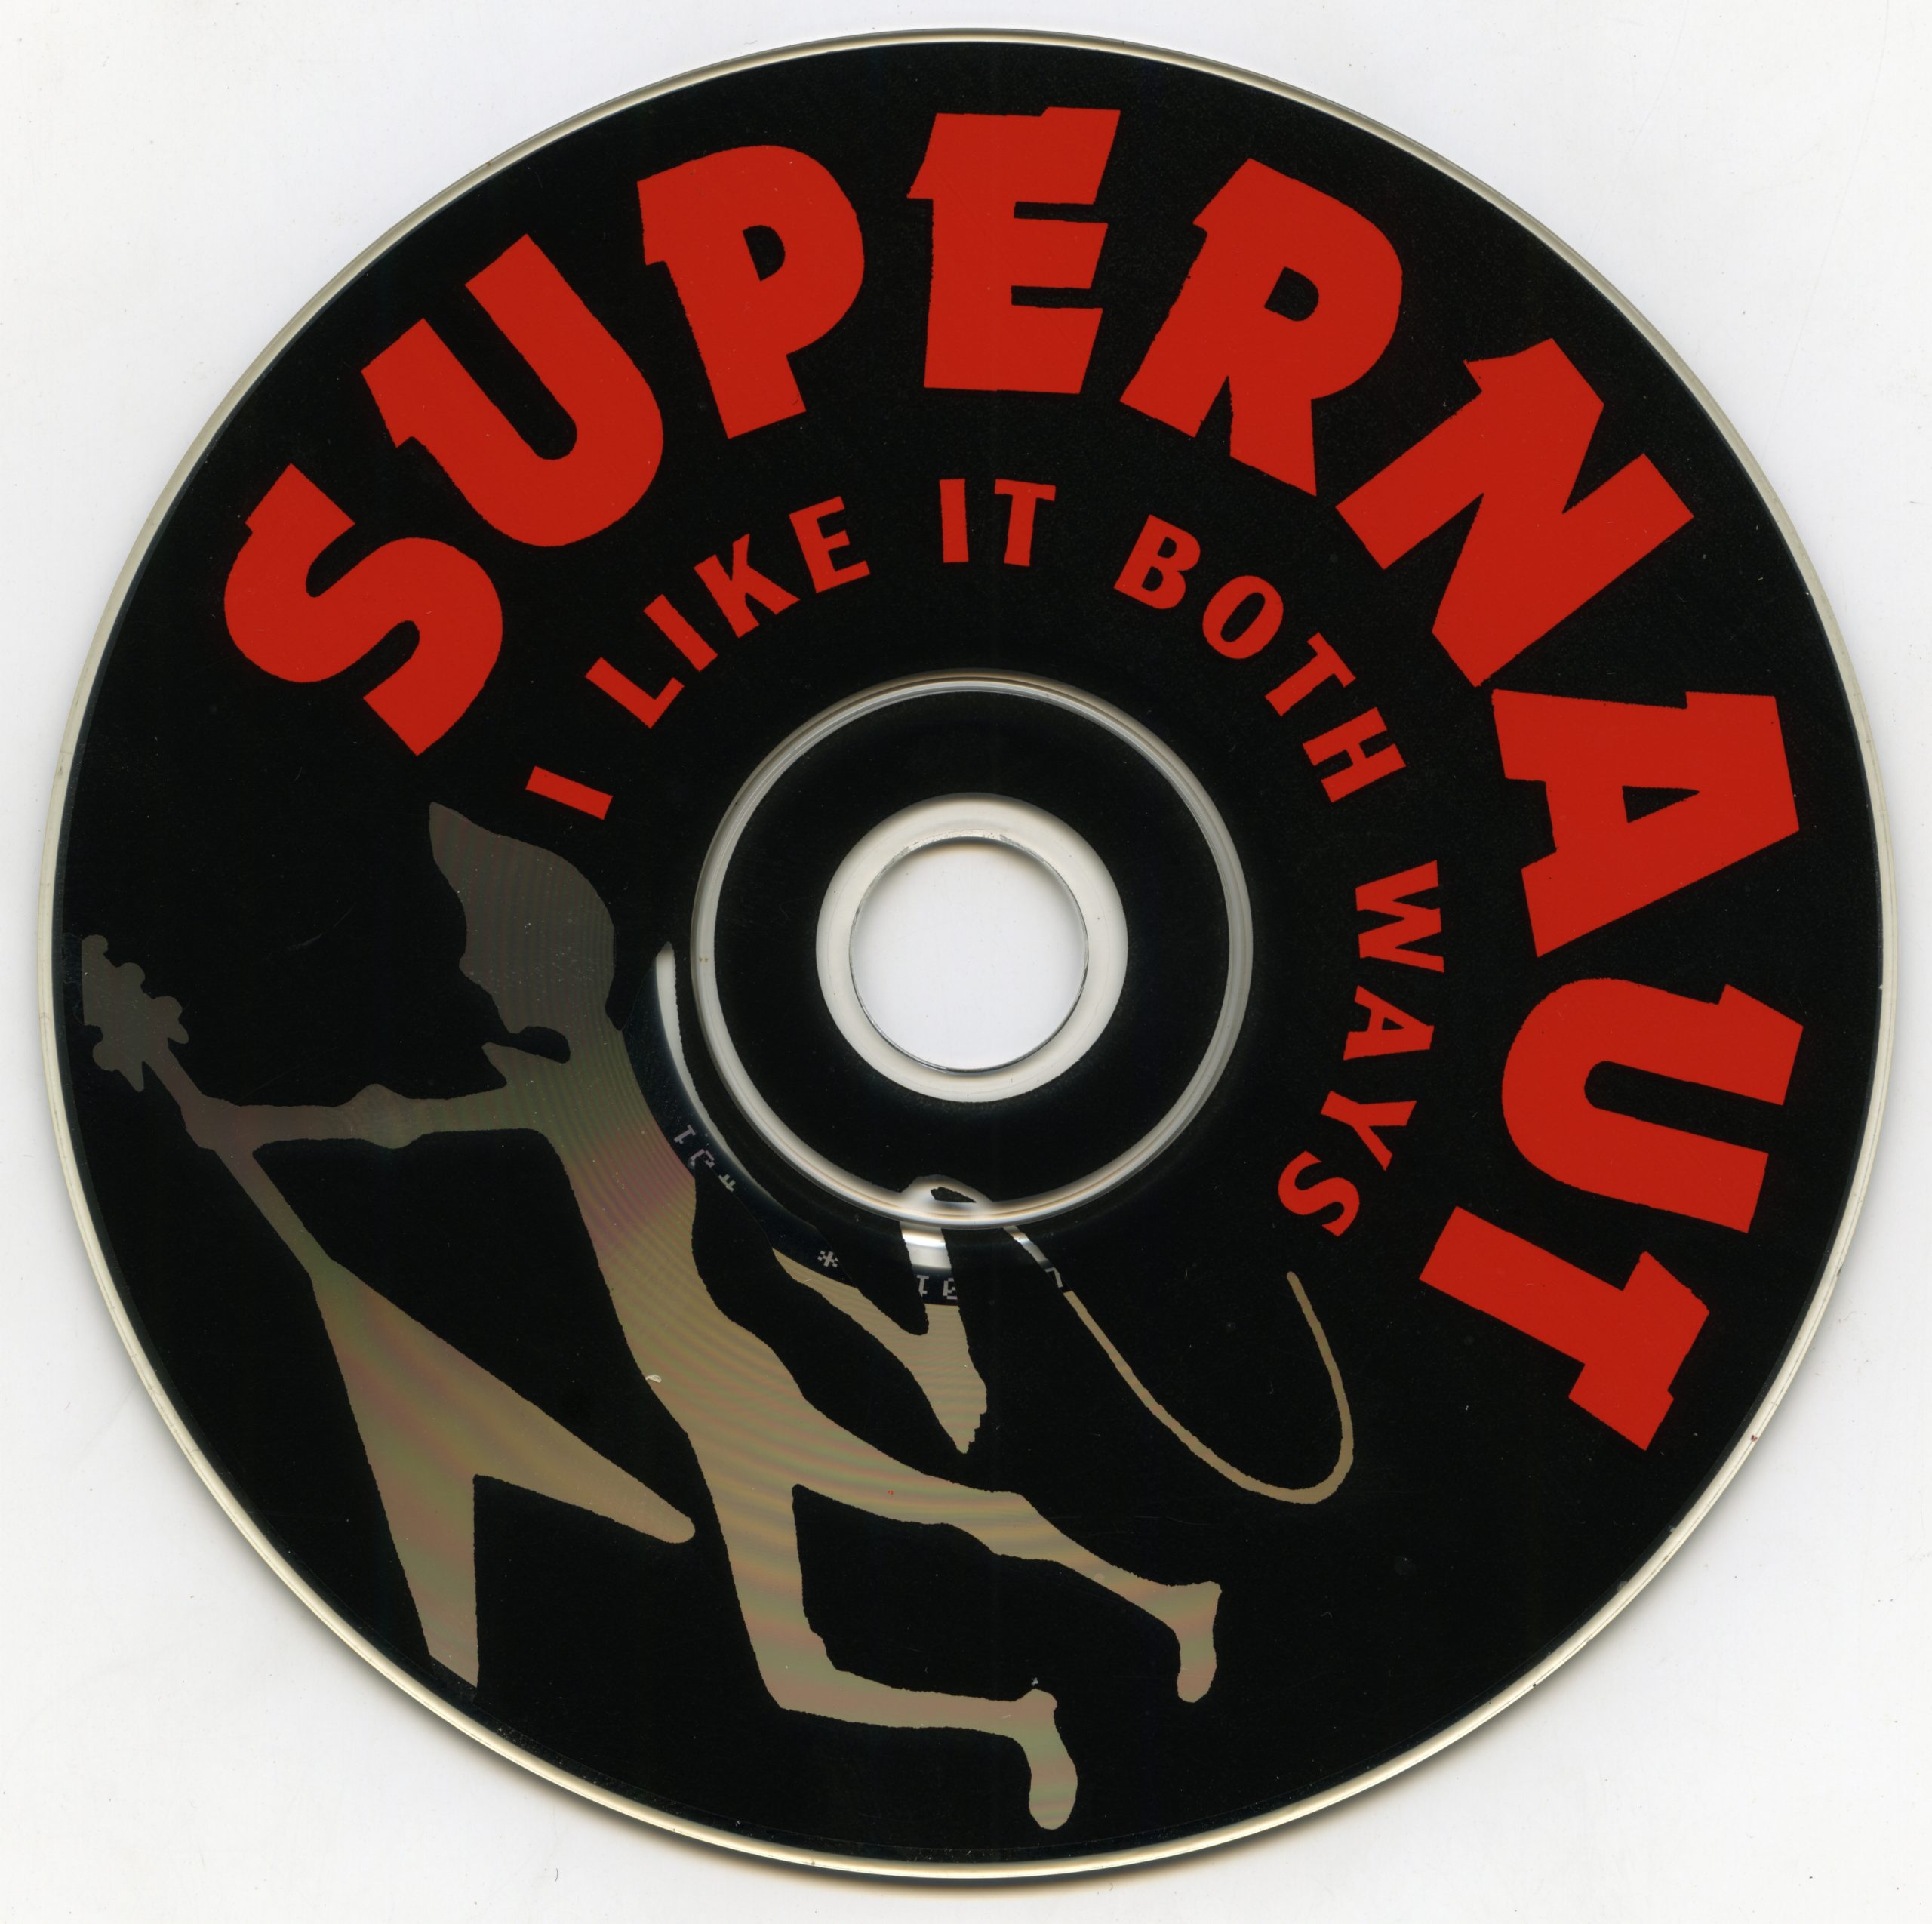 Album Supernaut I like it both ways